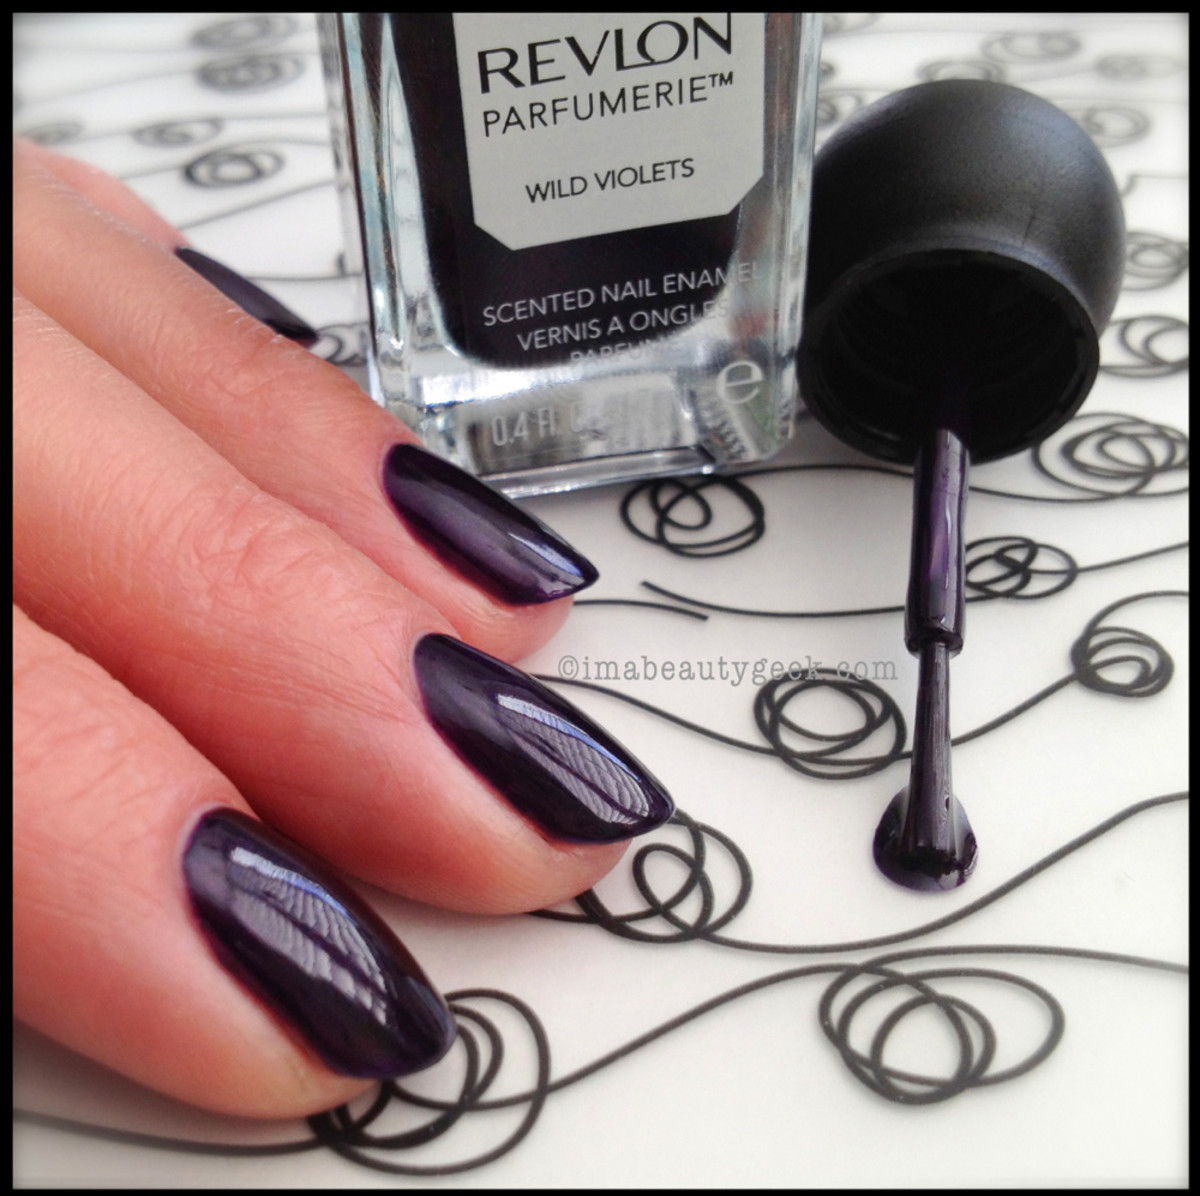 Revlon Parfumerie Wild Violets